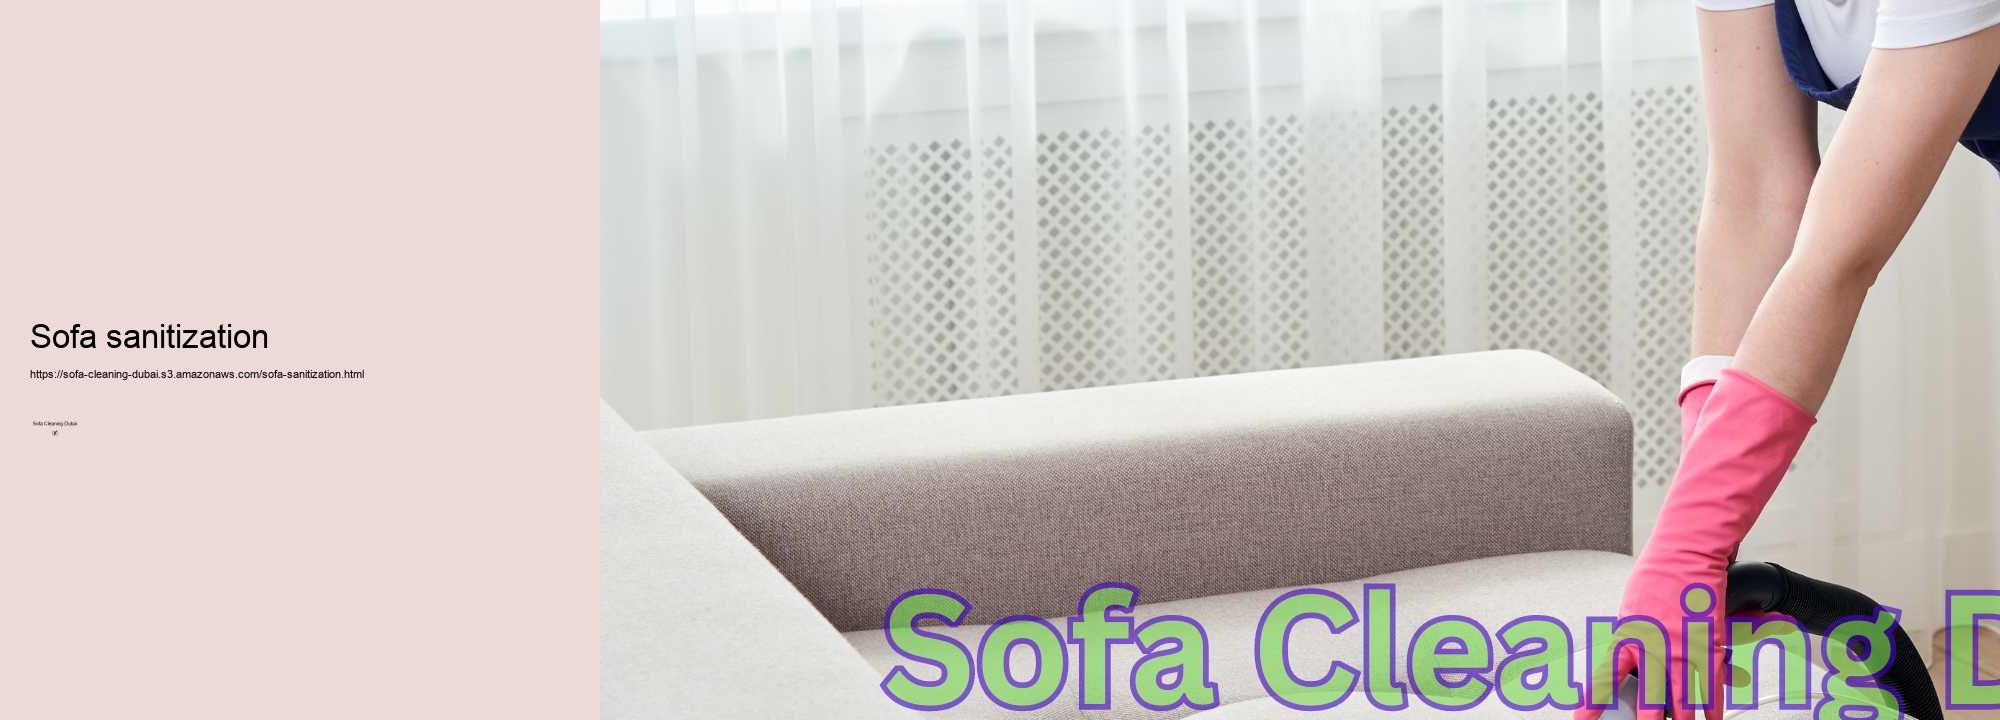 Sofa sanitization